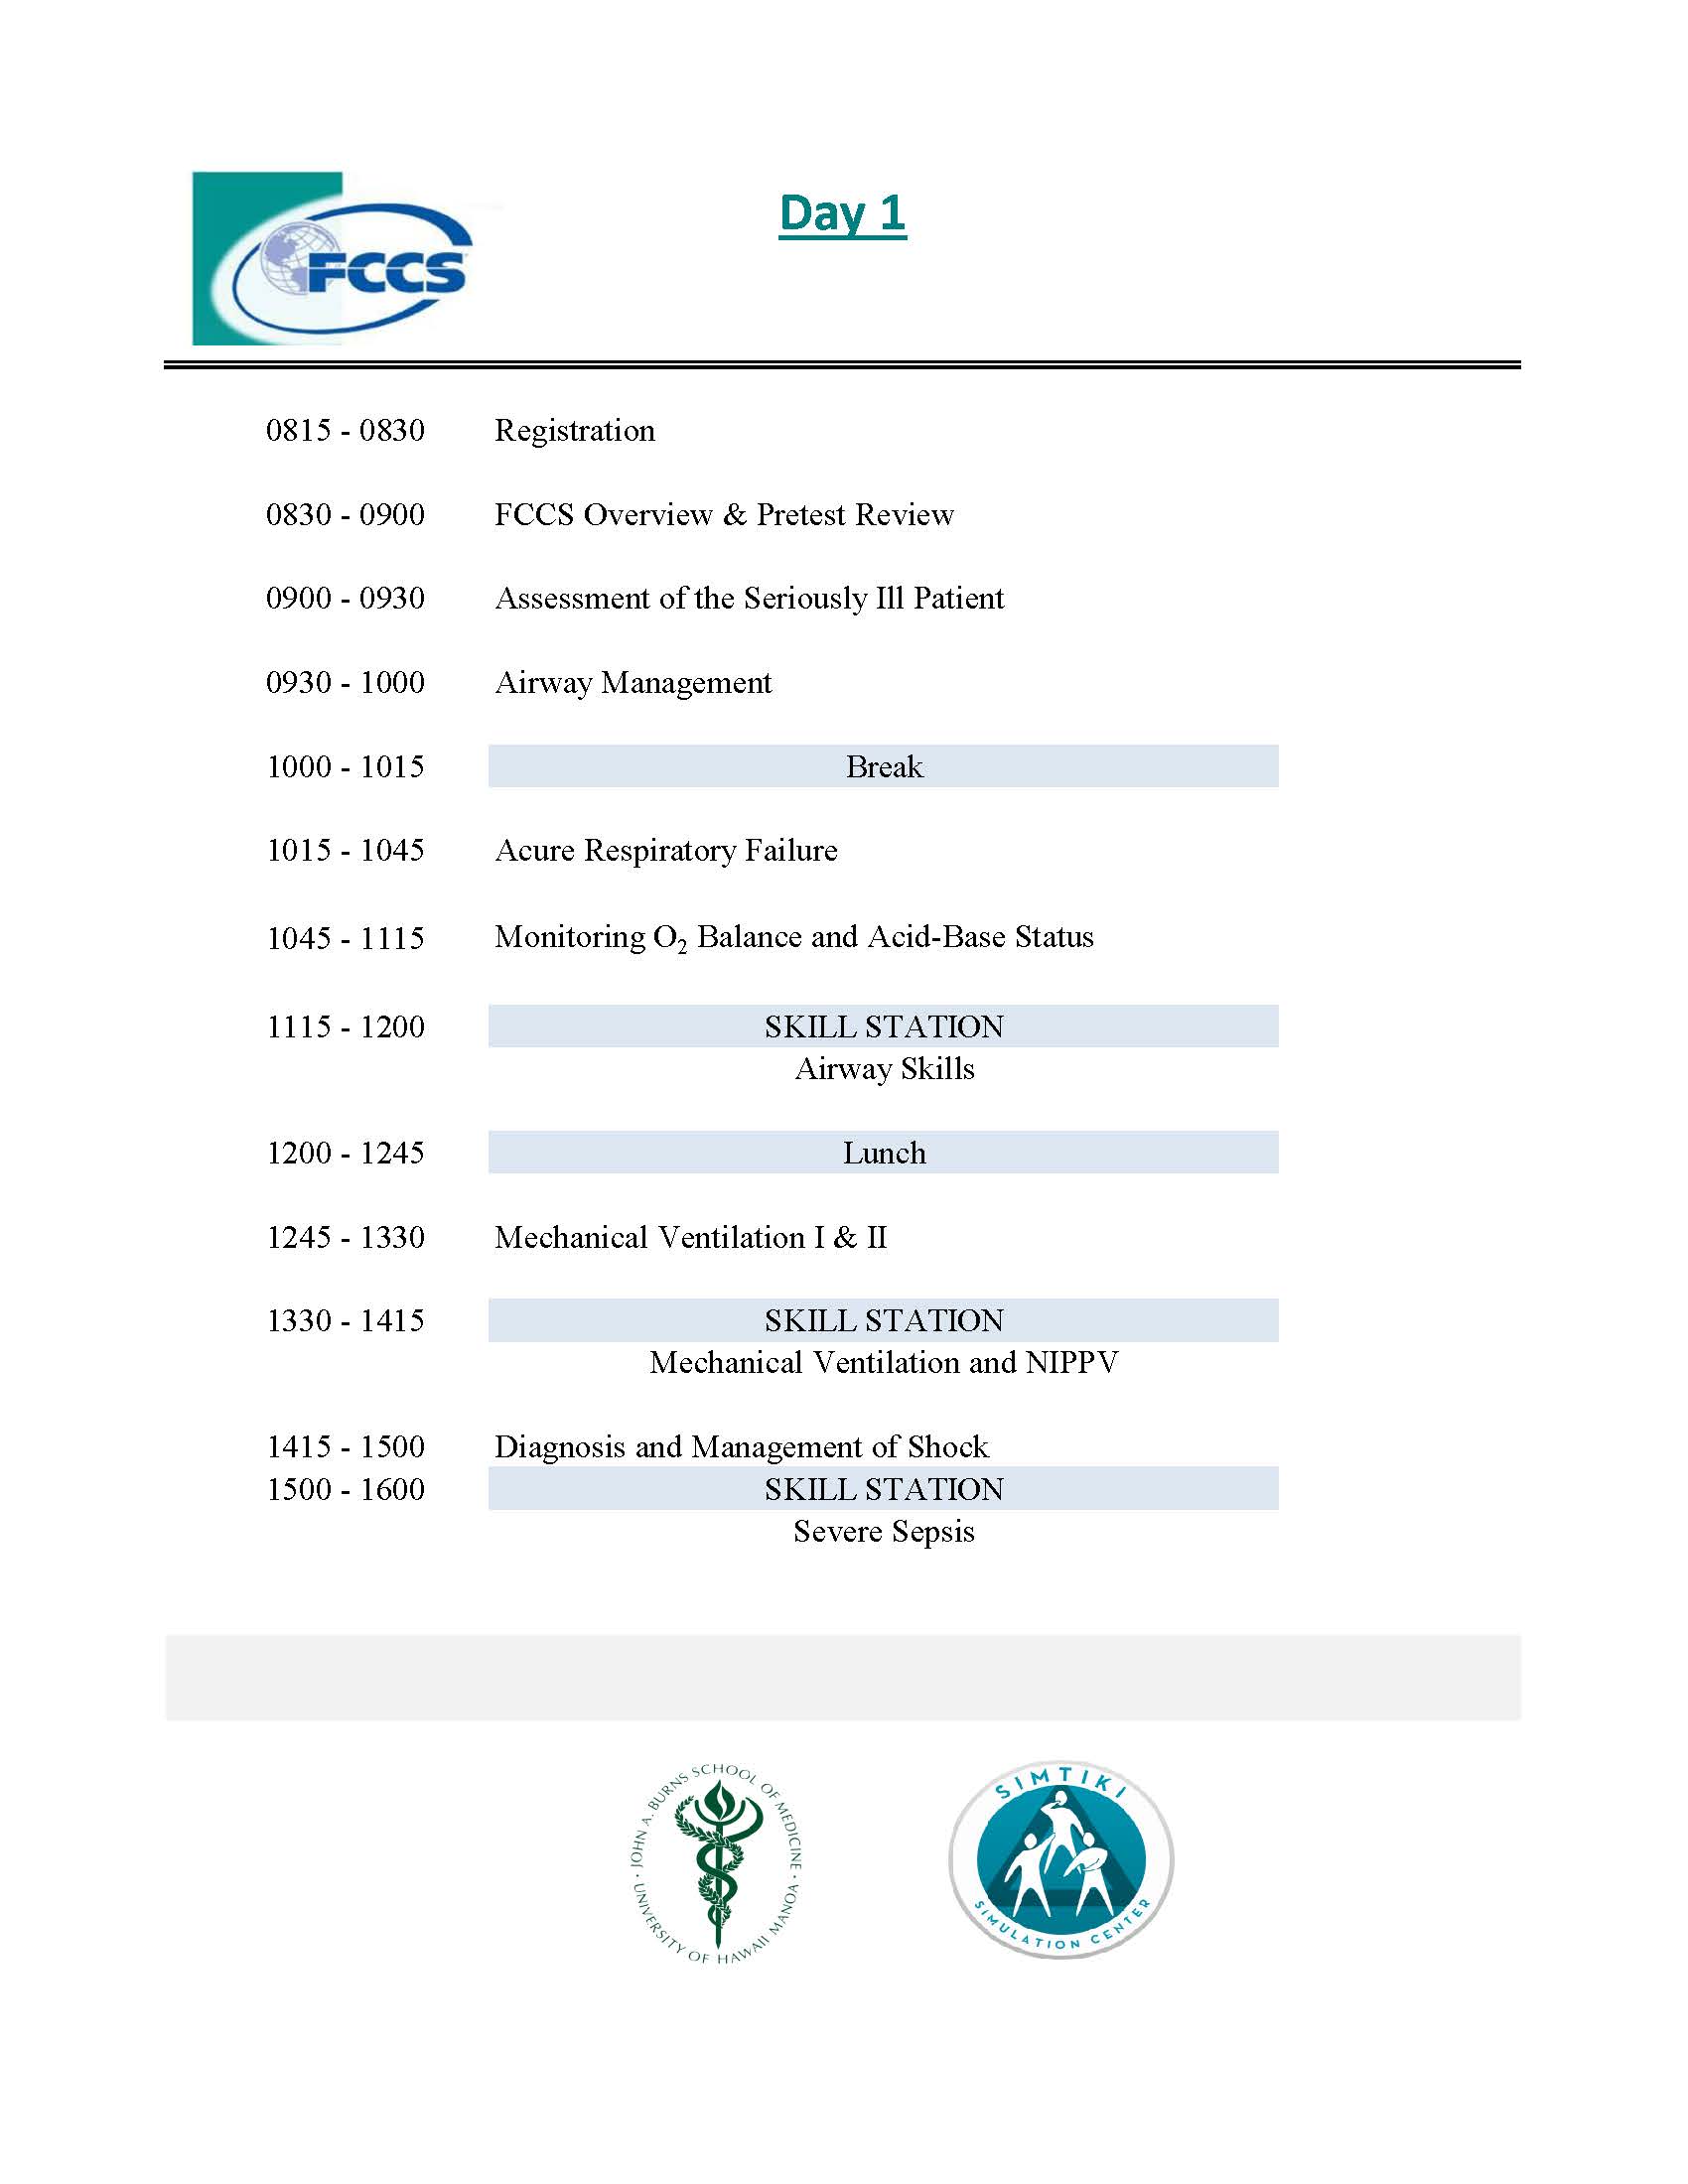 fccs agenda day 1